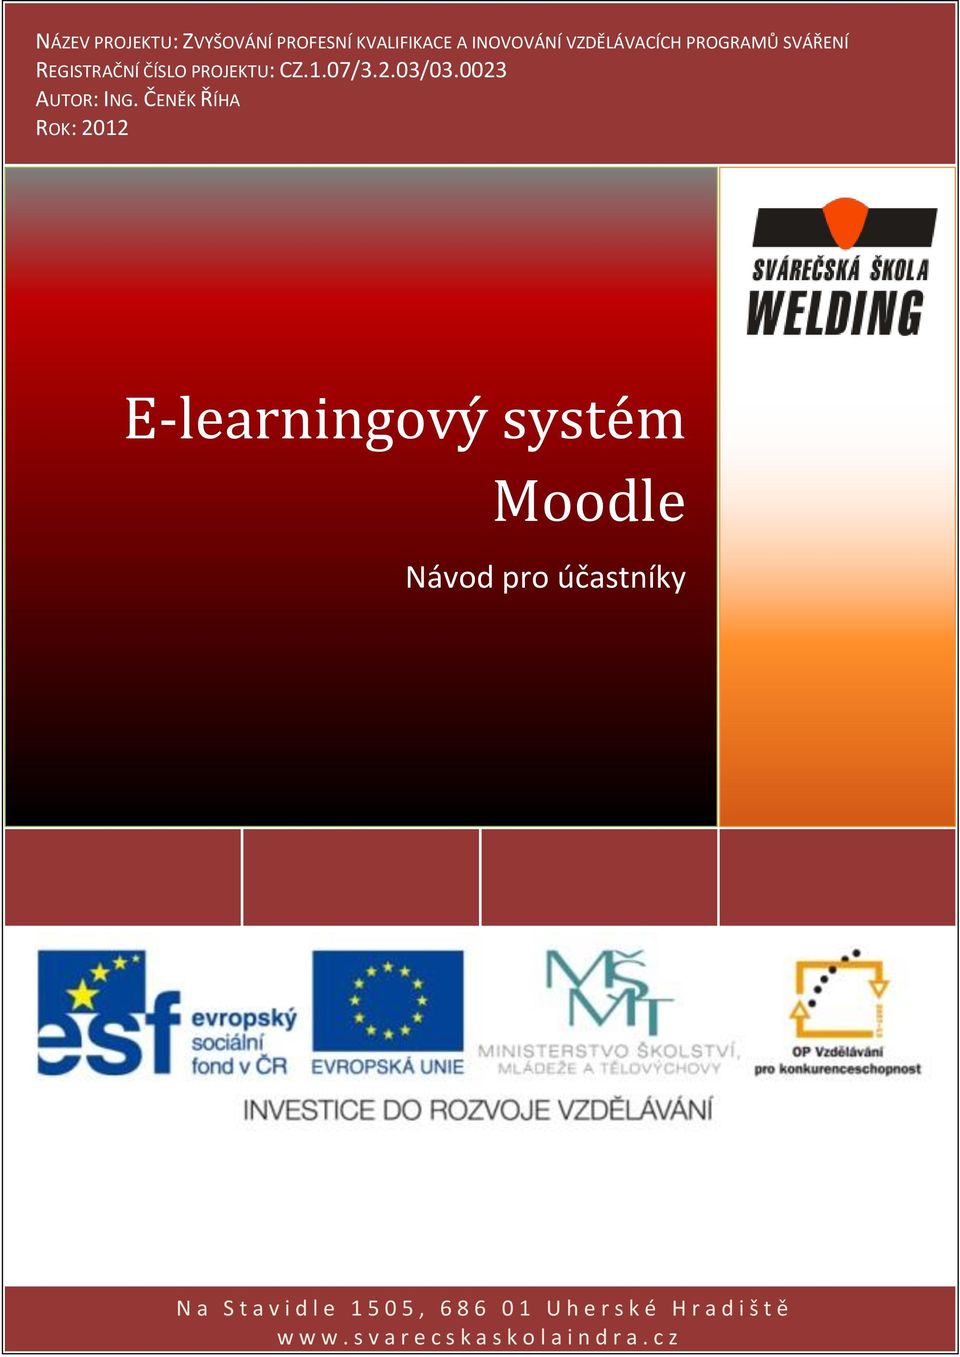 ČENĚK ŘÍHA ROK: 2012 E-learningový systém Moodle Návod pro účastníky - 0 - N a S t a v